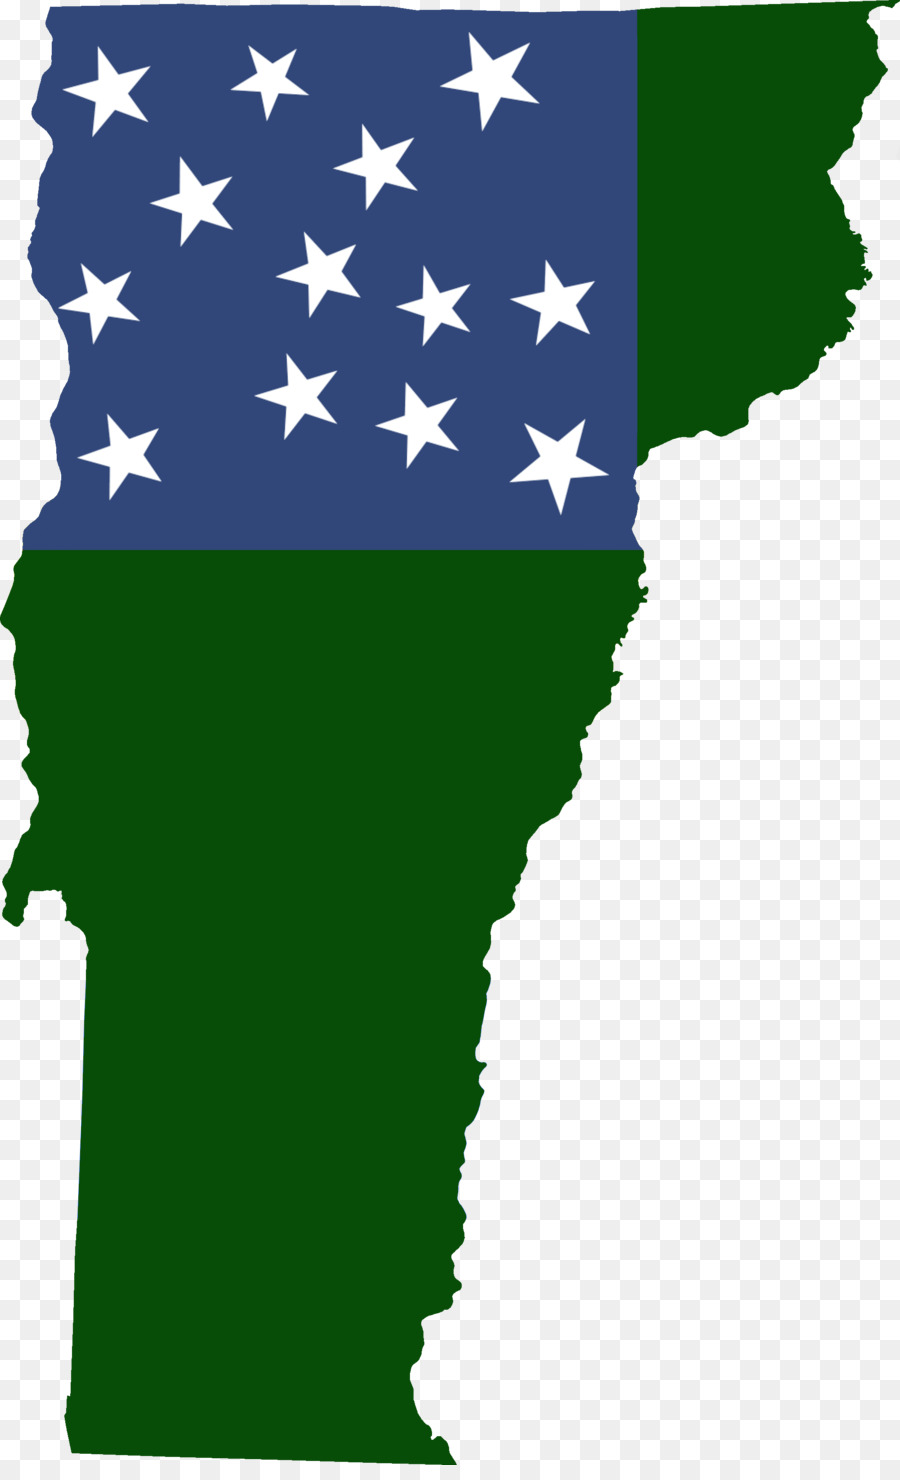 Vermont Republic amerikanischen Revolutionären Krieg Flagge von Vermont - Republik